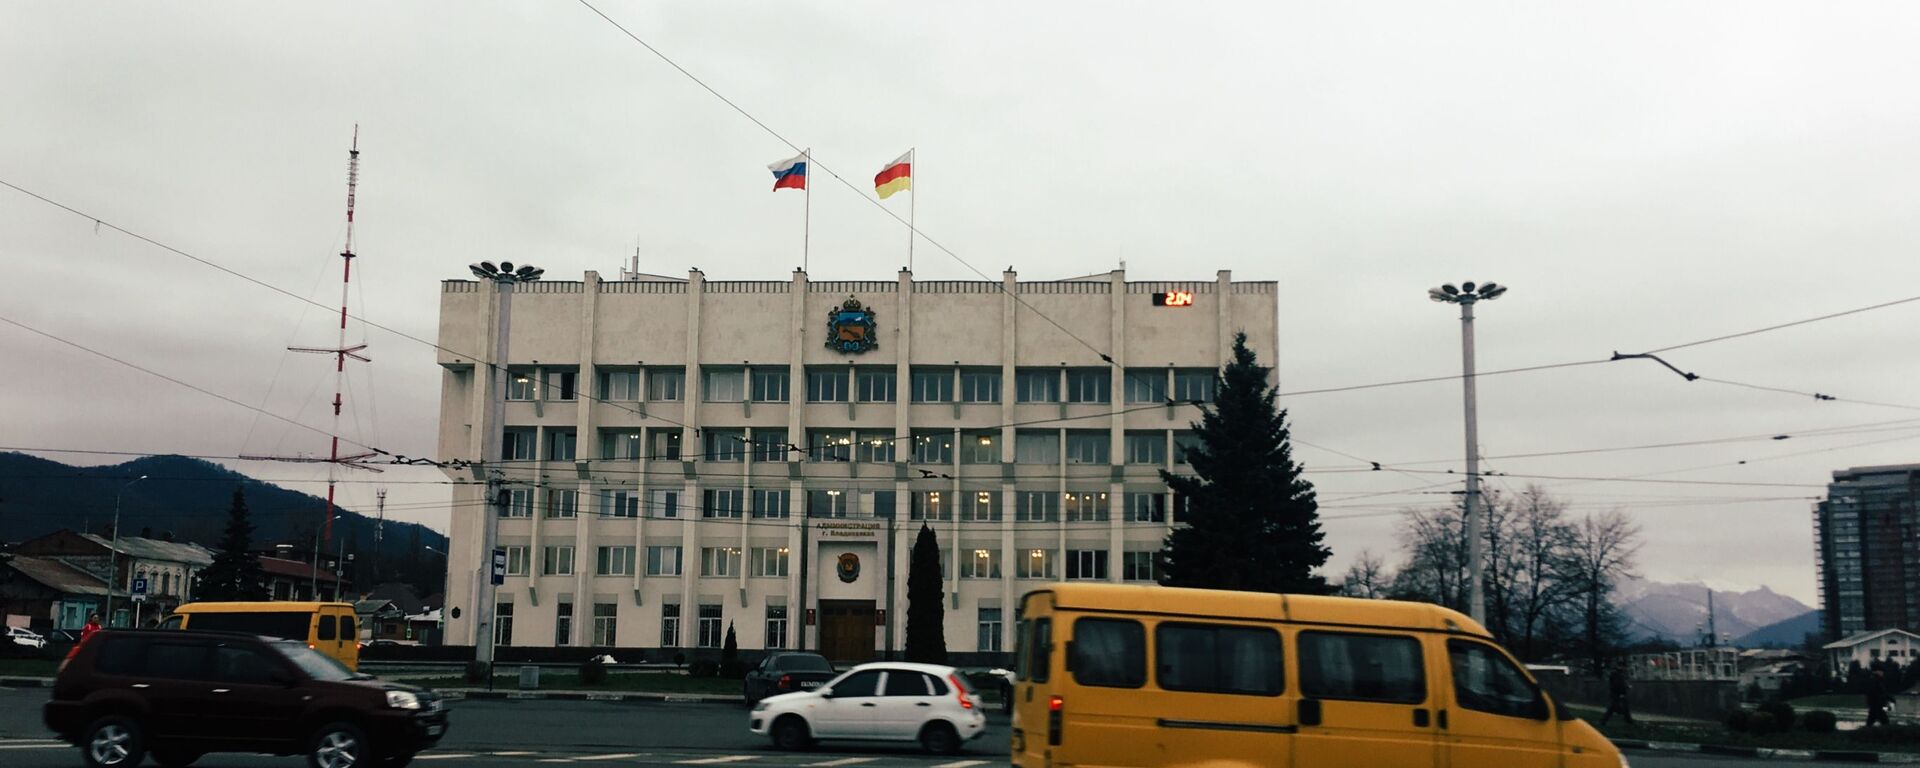 Администрация местного самоцправления Владикавказа - Sputnik Южная Осетия, 1920, 08.09.2021